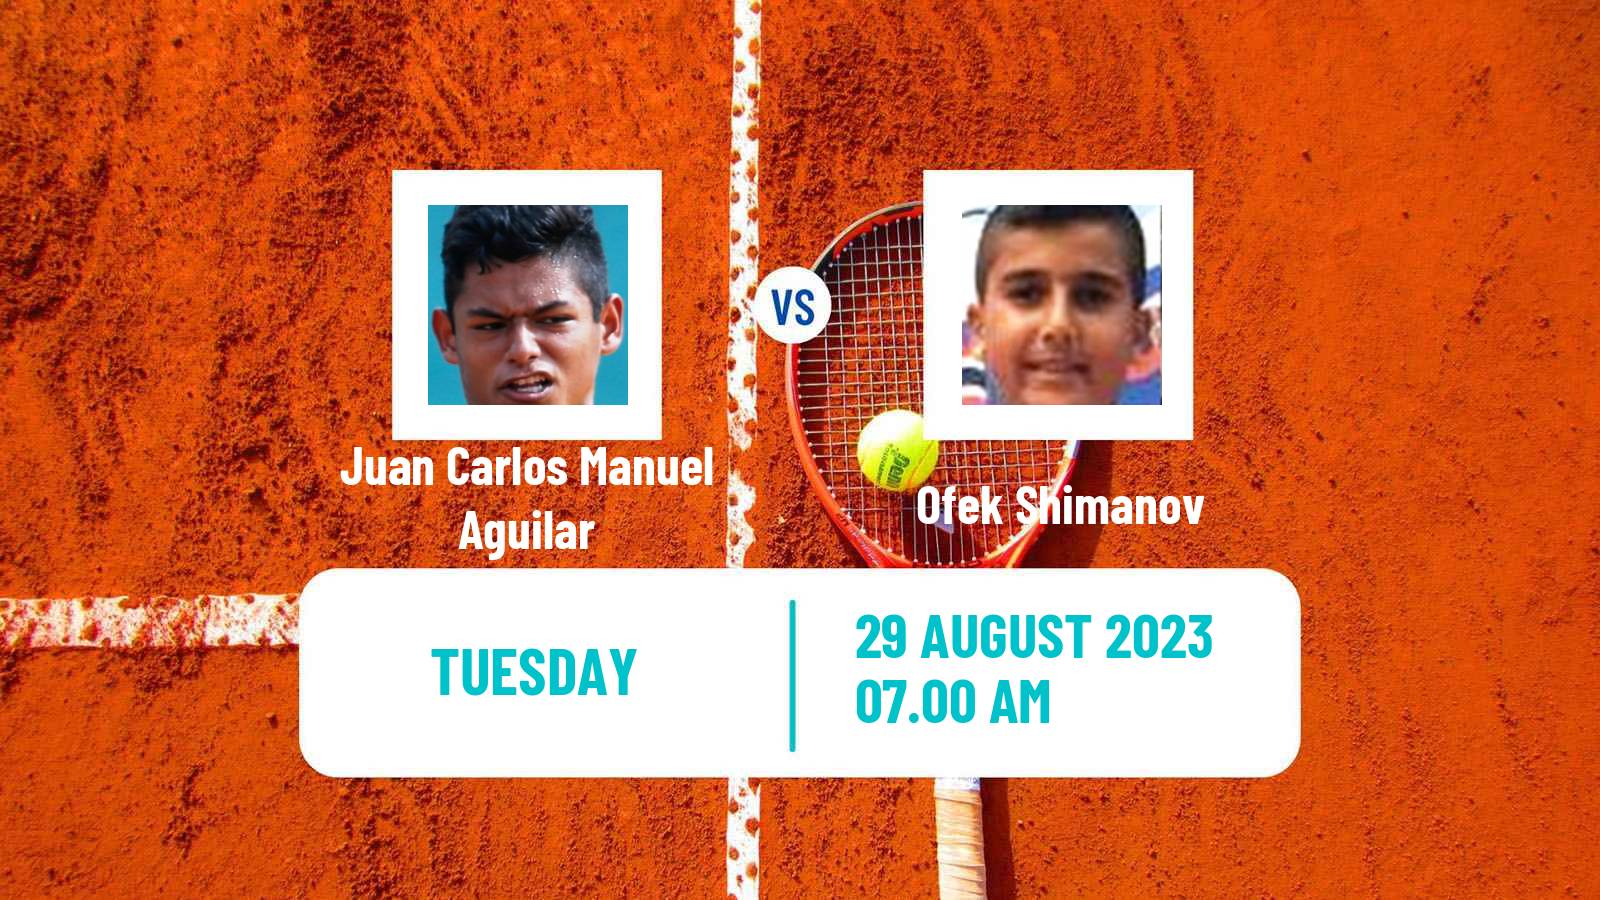 Tennis ITF M15 Budapest Men Juan Carlos Manuel Aguilar - Ofek Shimanov